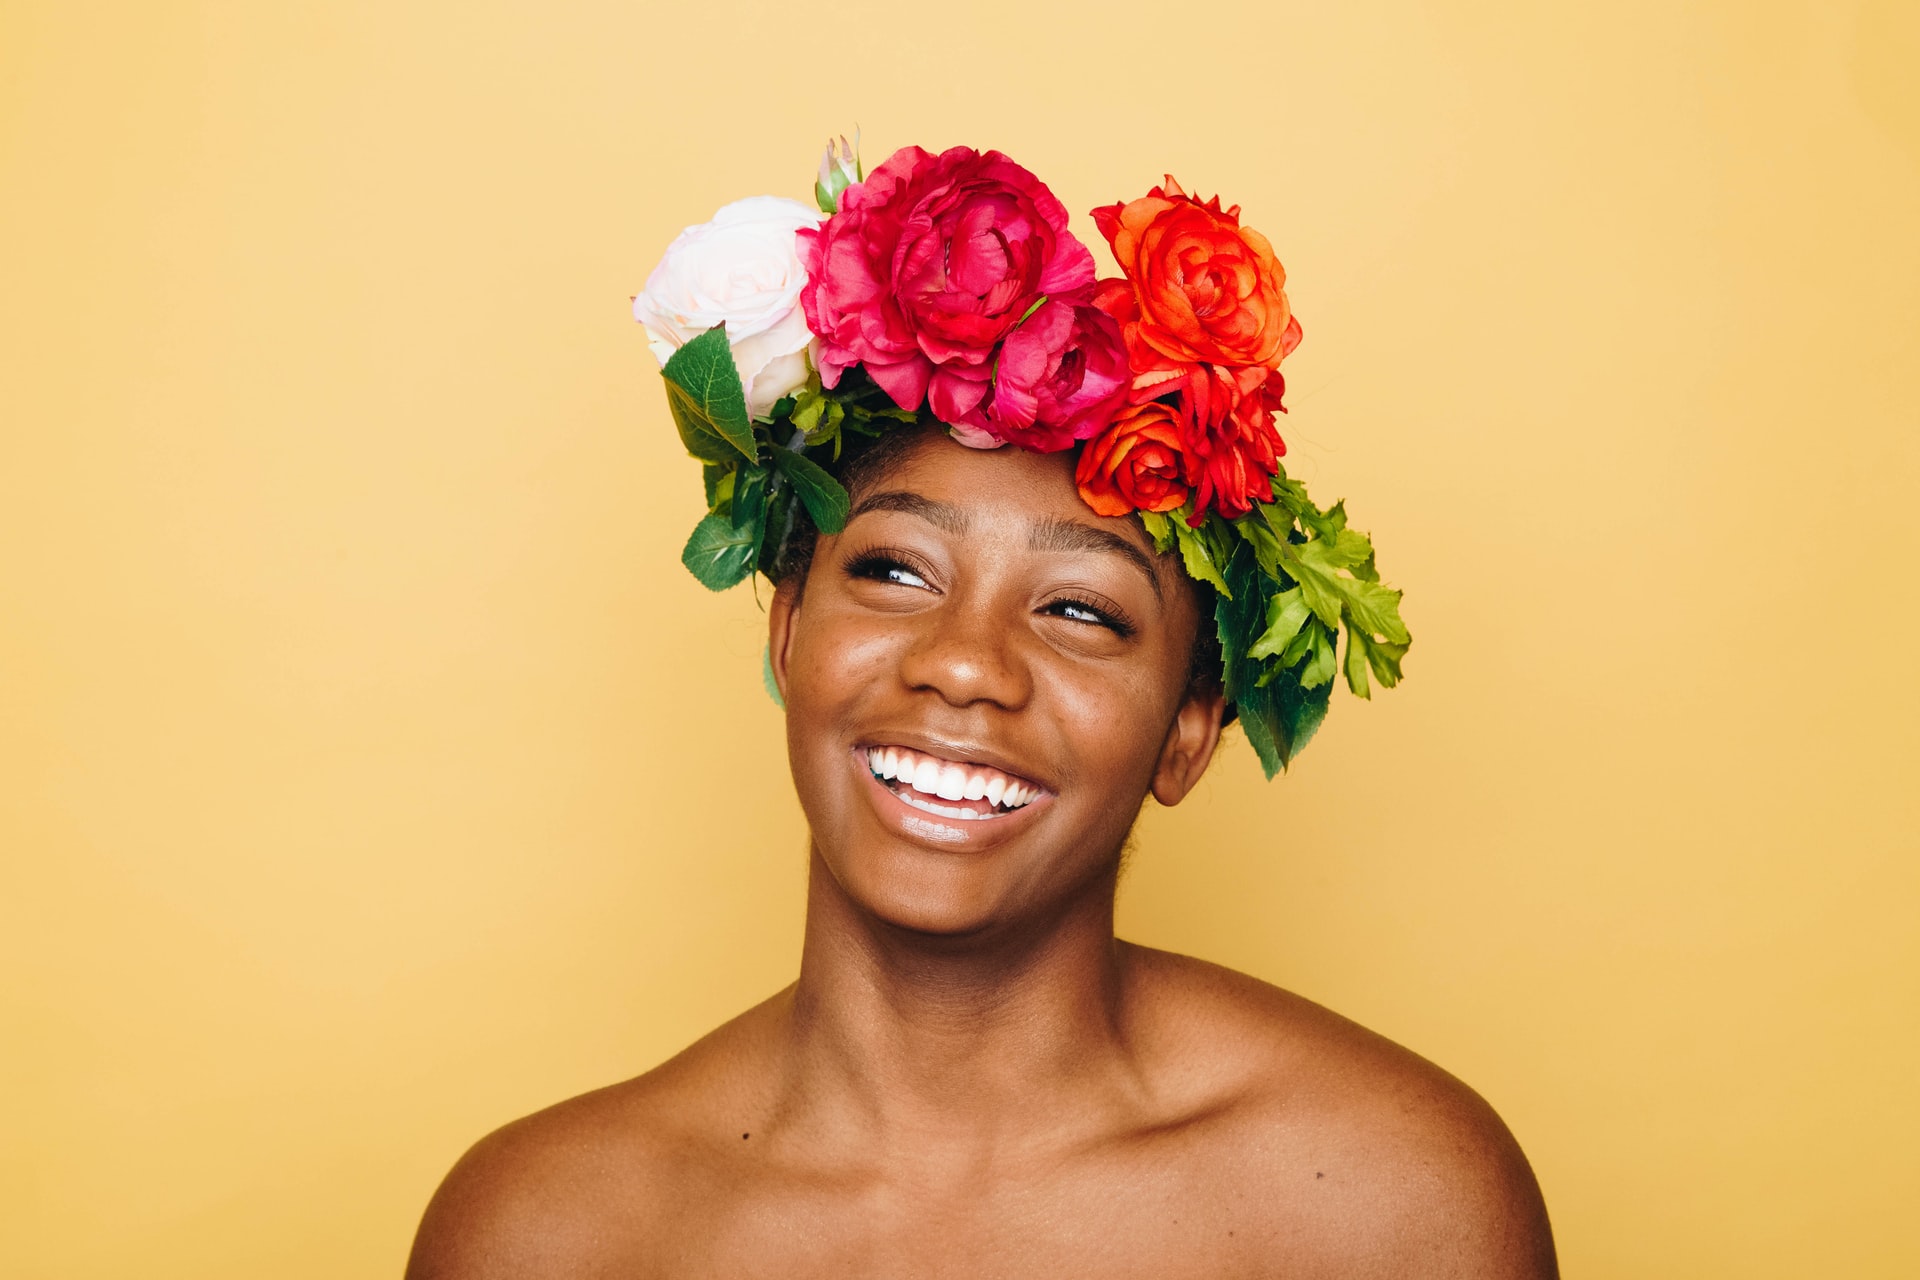 Eine Frau trägt einen bunten Blumenkranz auf dem Kopf, schaut zur Seite und grinst.